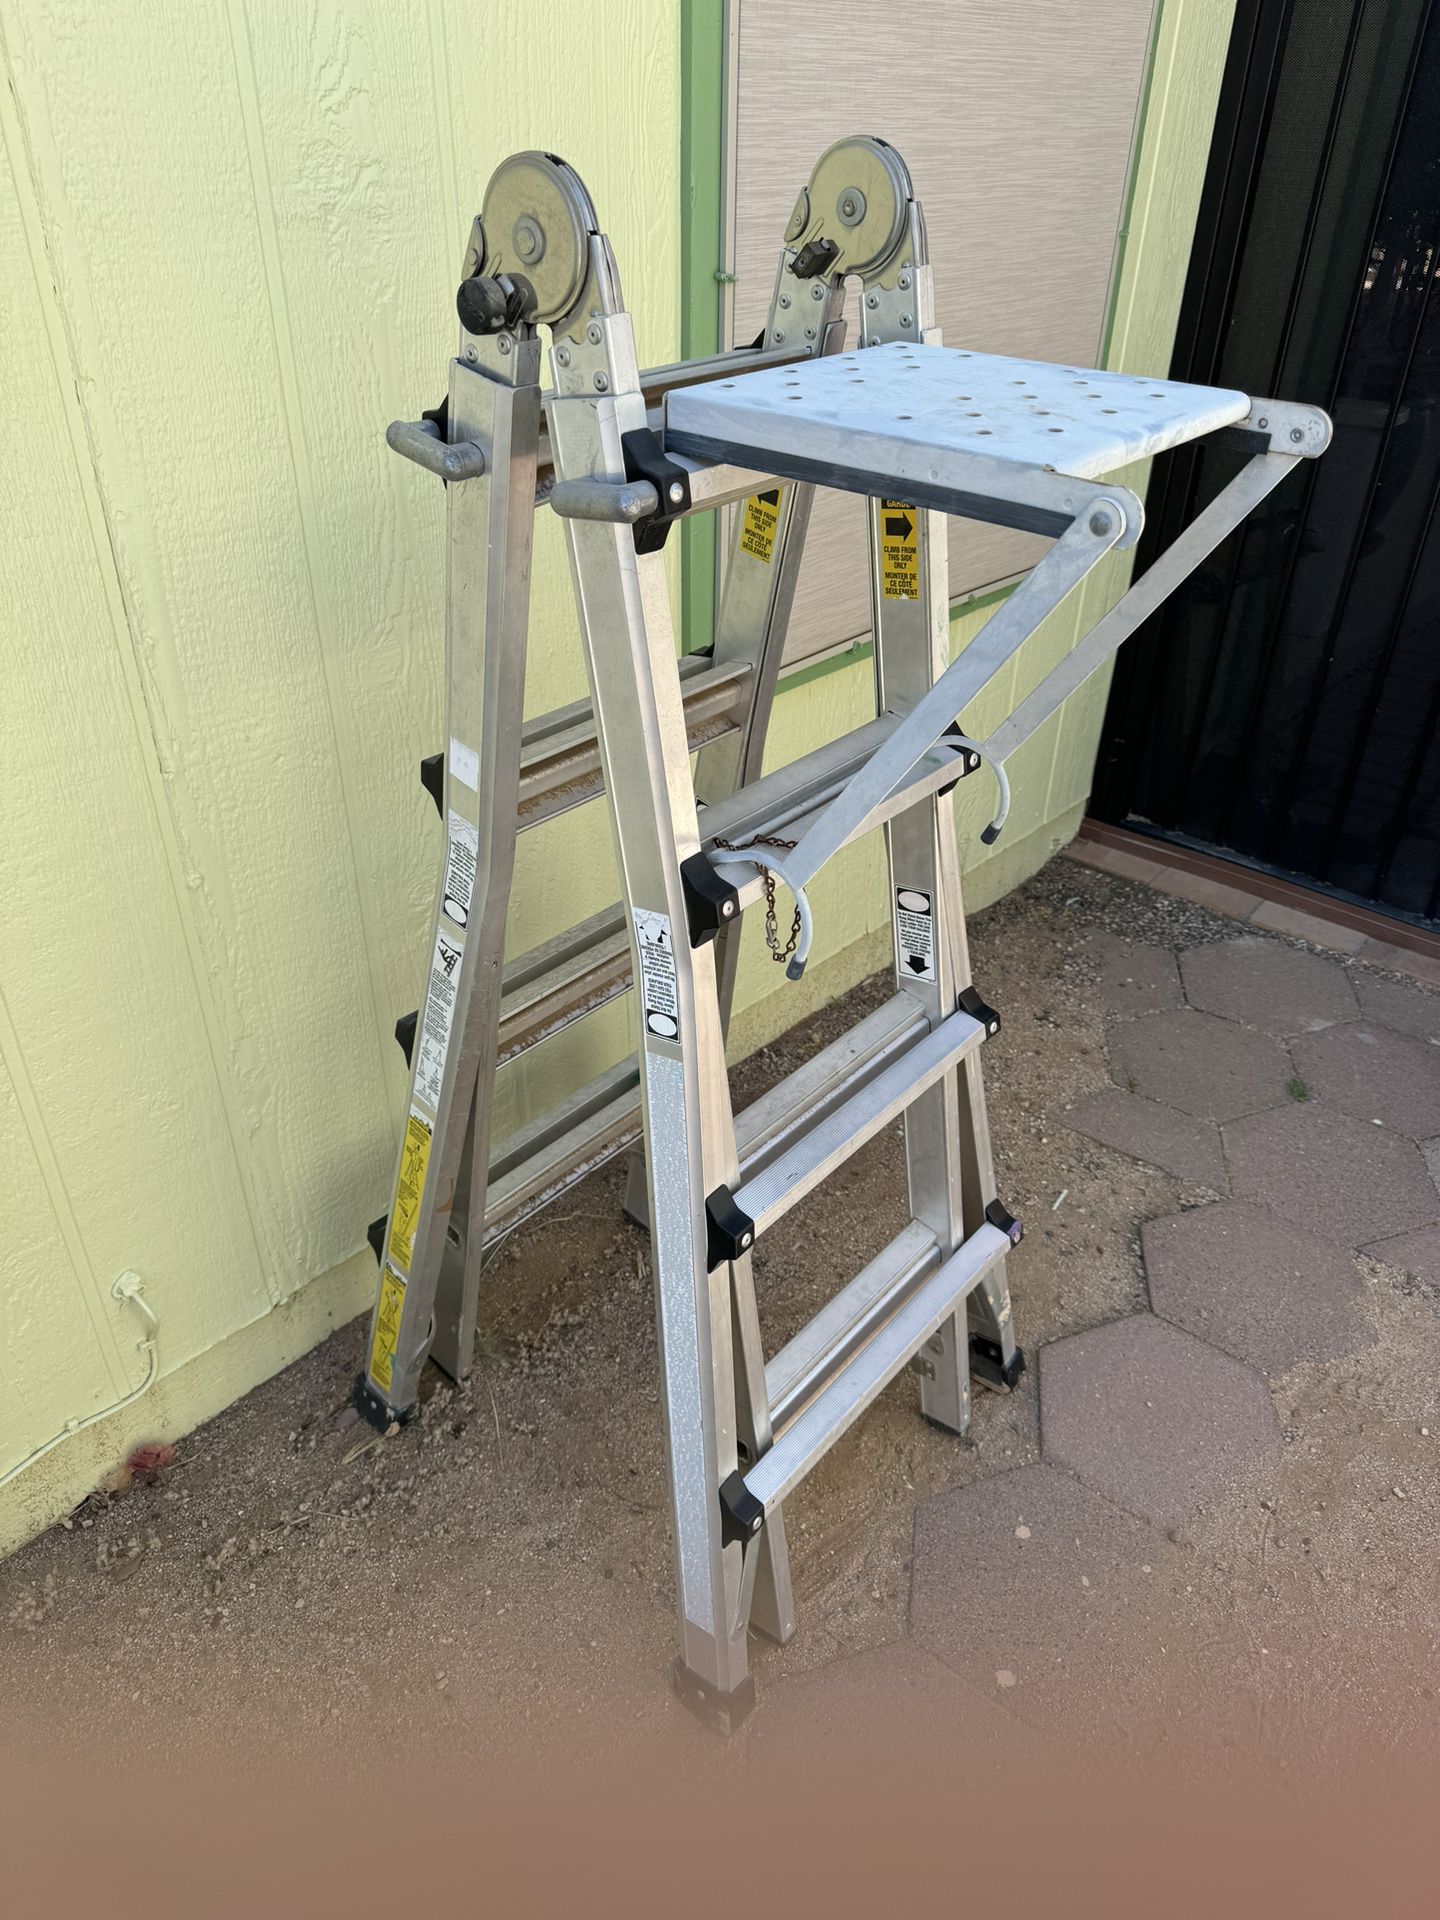 Multi Use Step Ladder